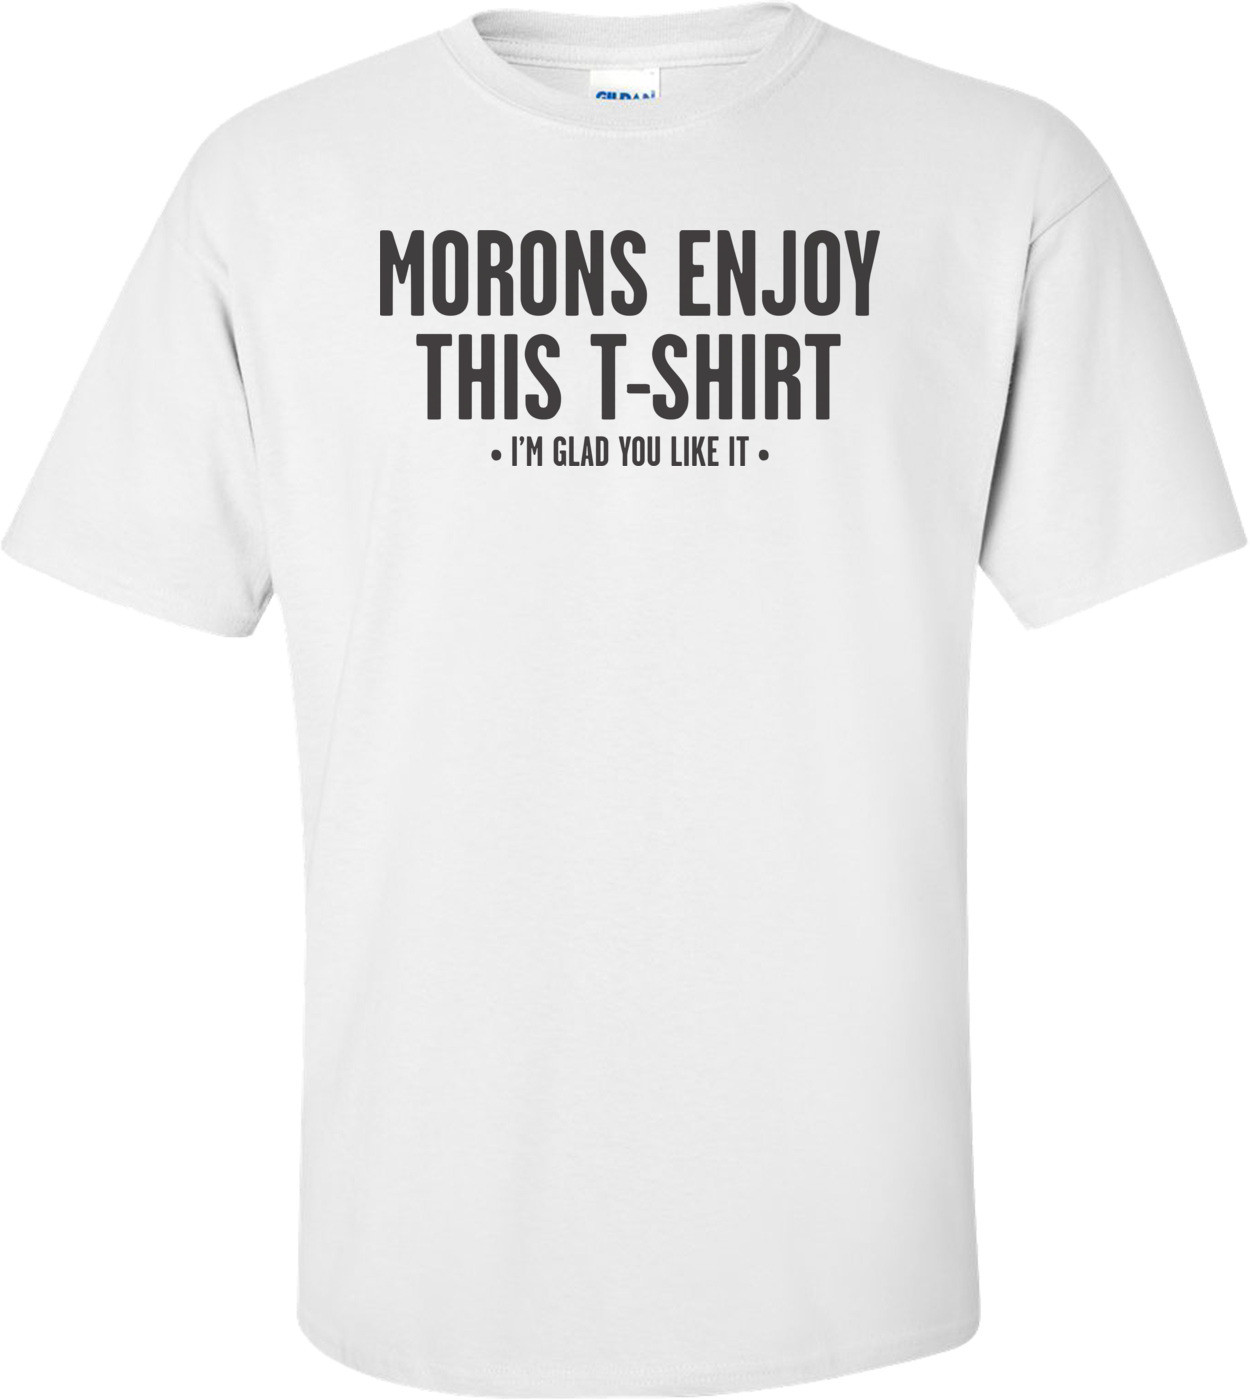 Morons Enjoy This T-shirt, I'm Glad You Like It T-shirt